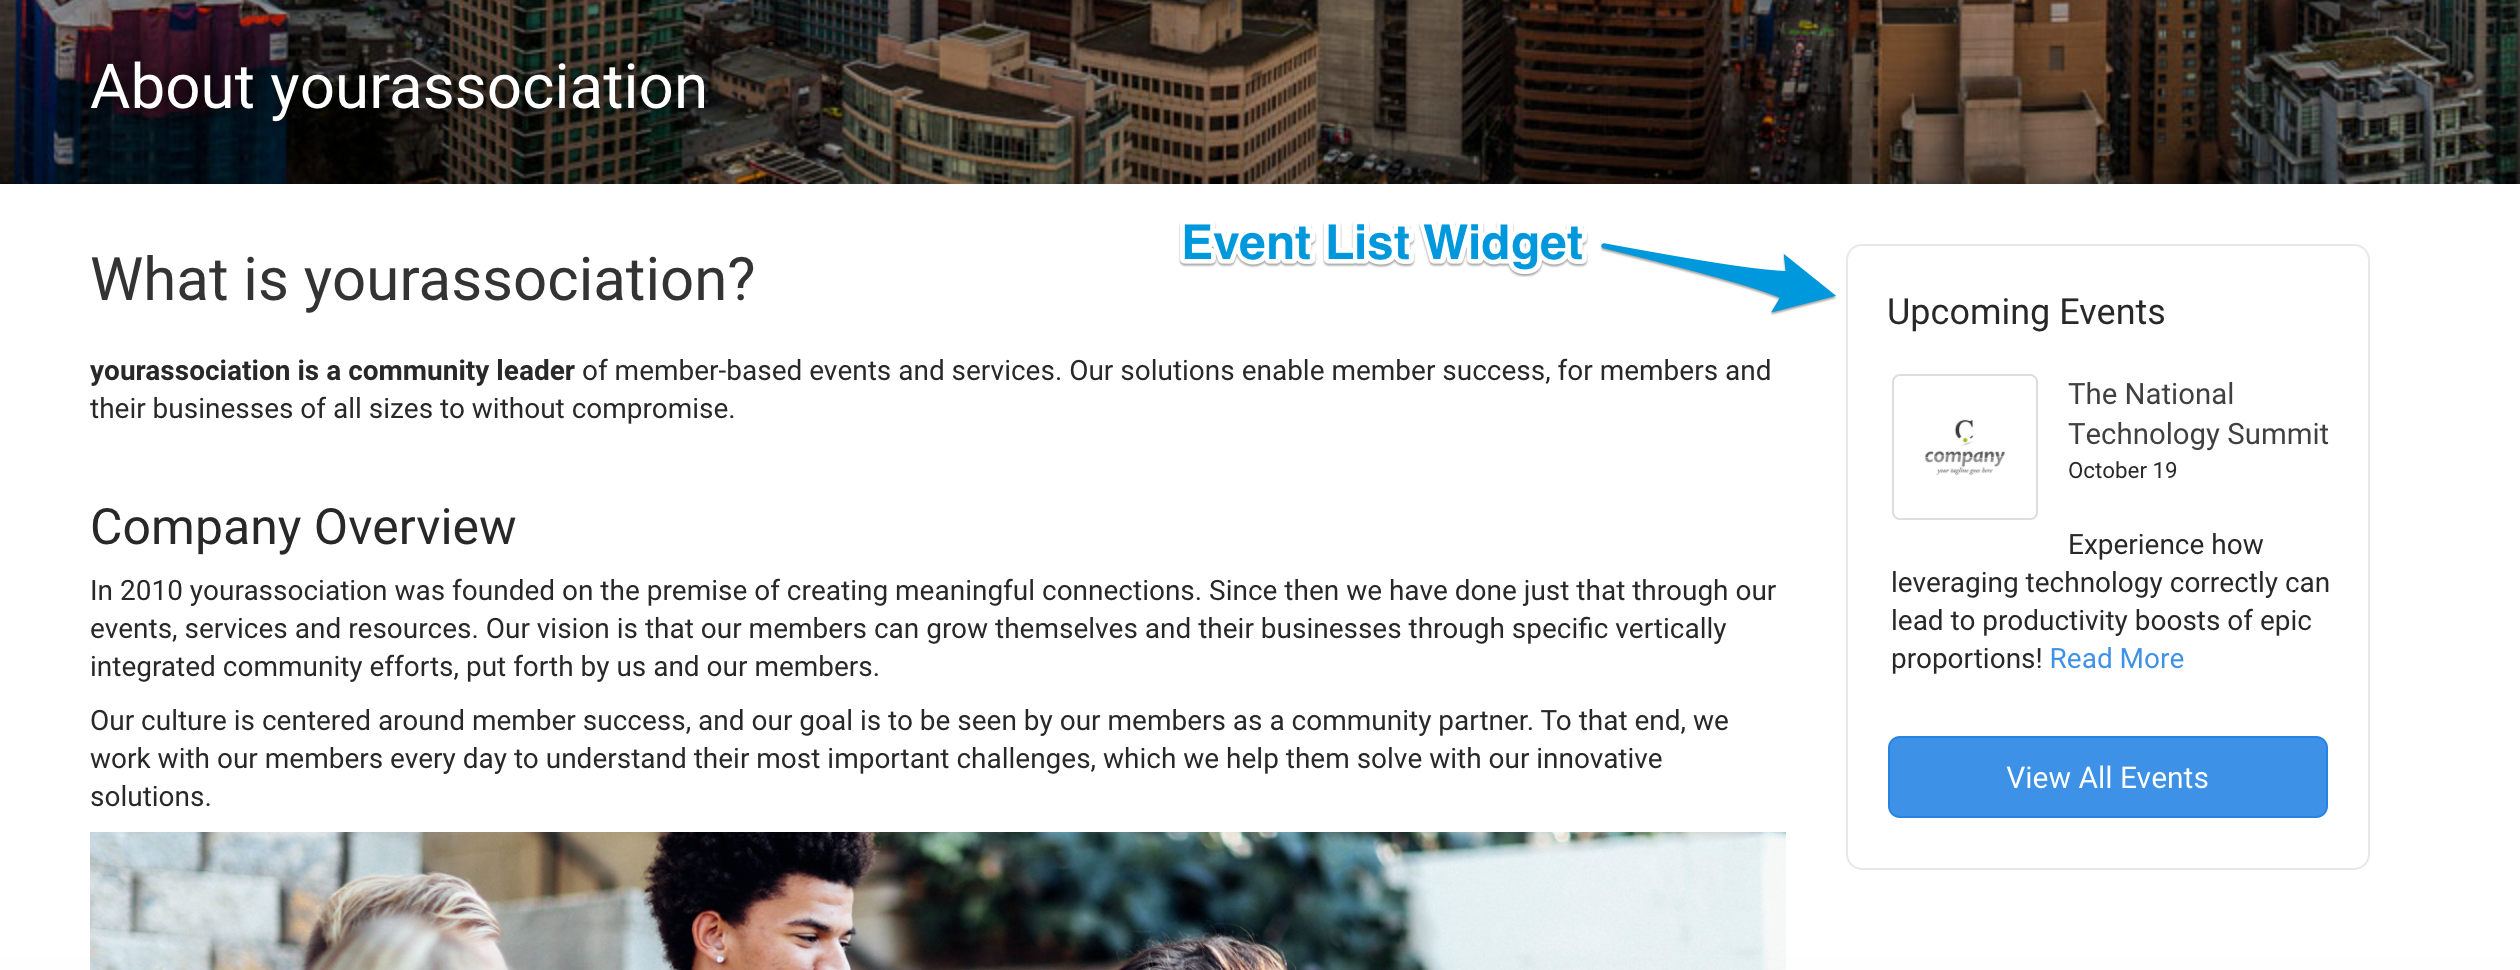 event_widget.png